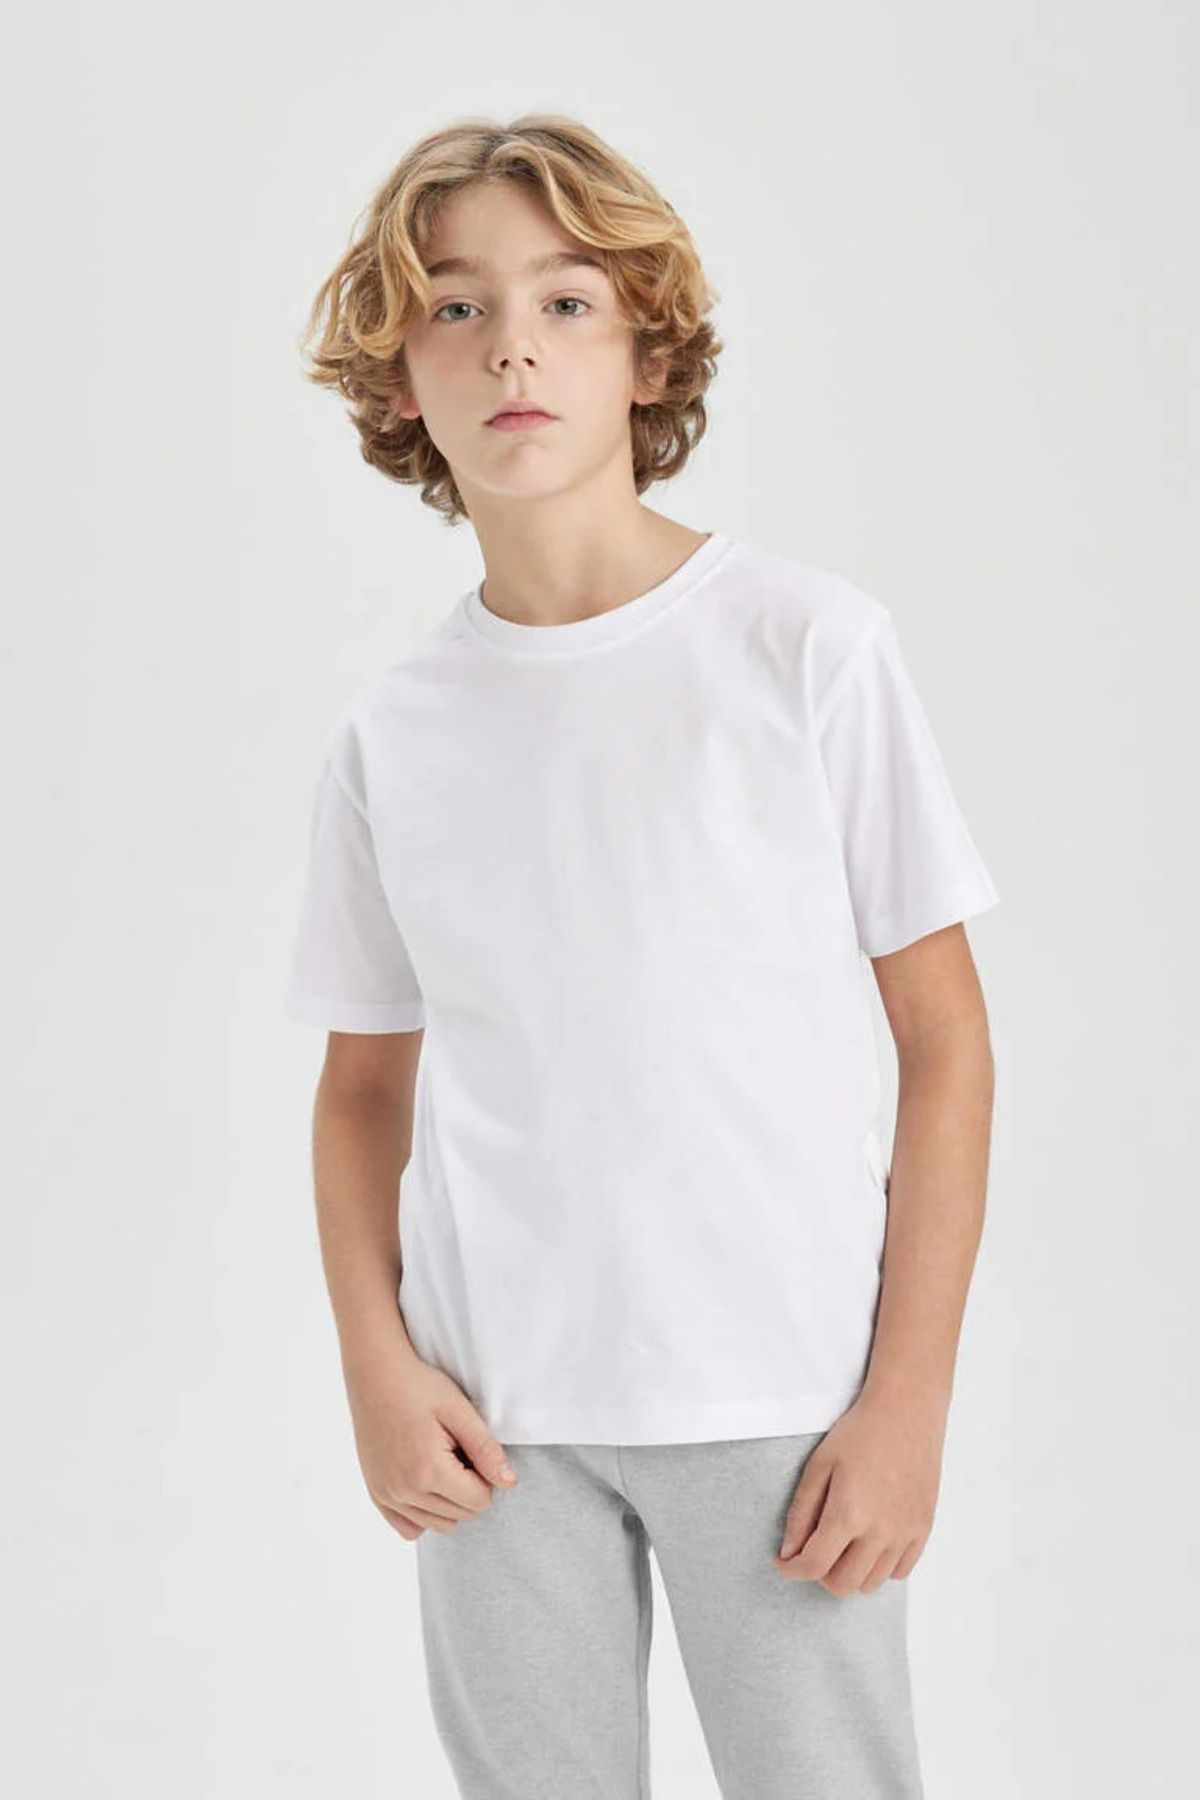 Defacto K1687A6/WT34 Defacto Erkek Çocuk T-shirt WHITE